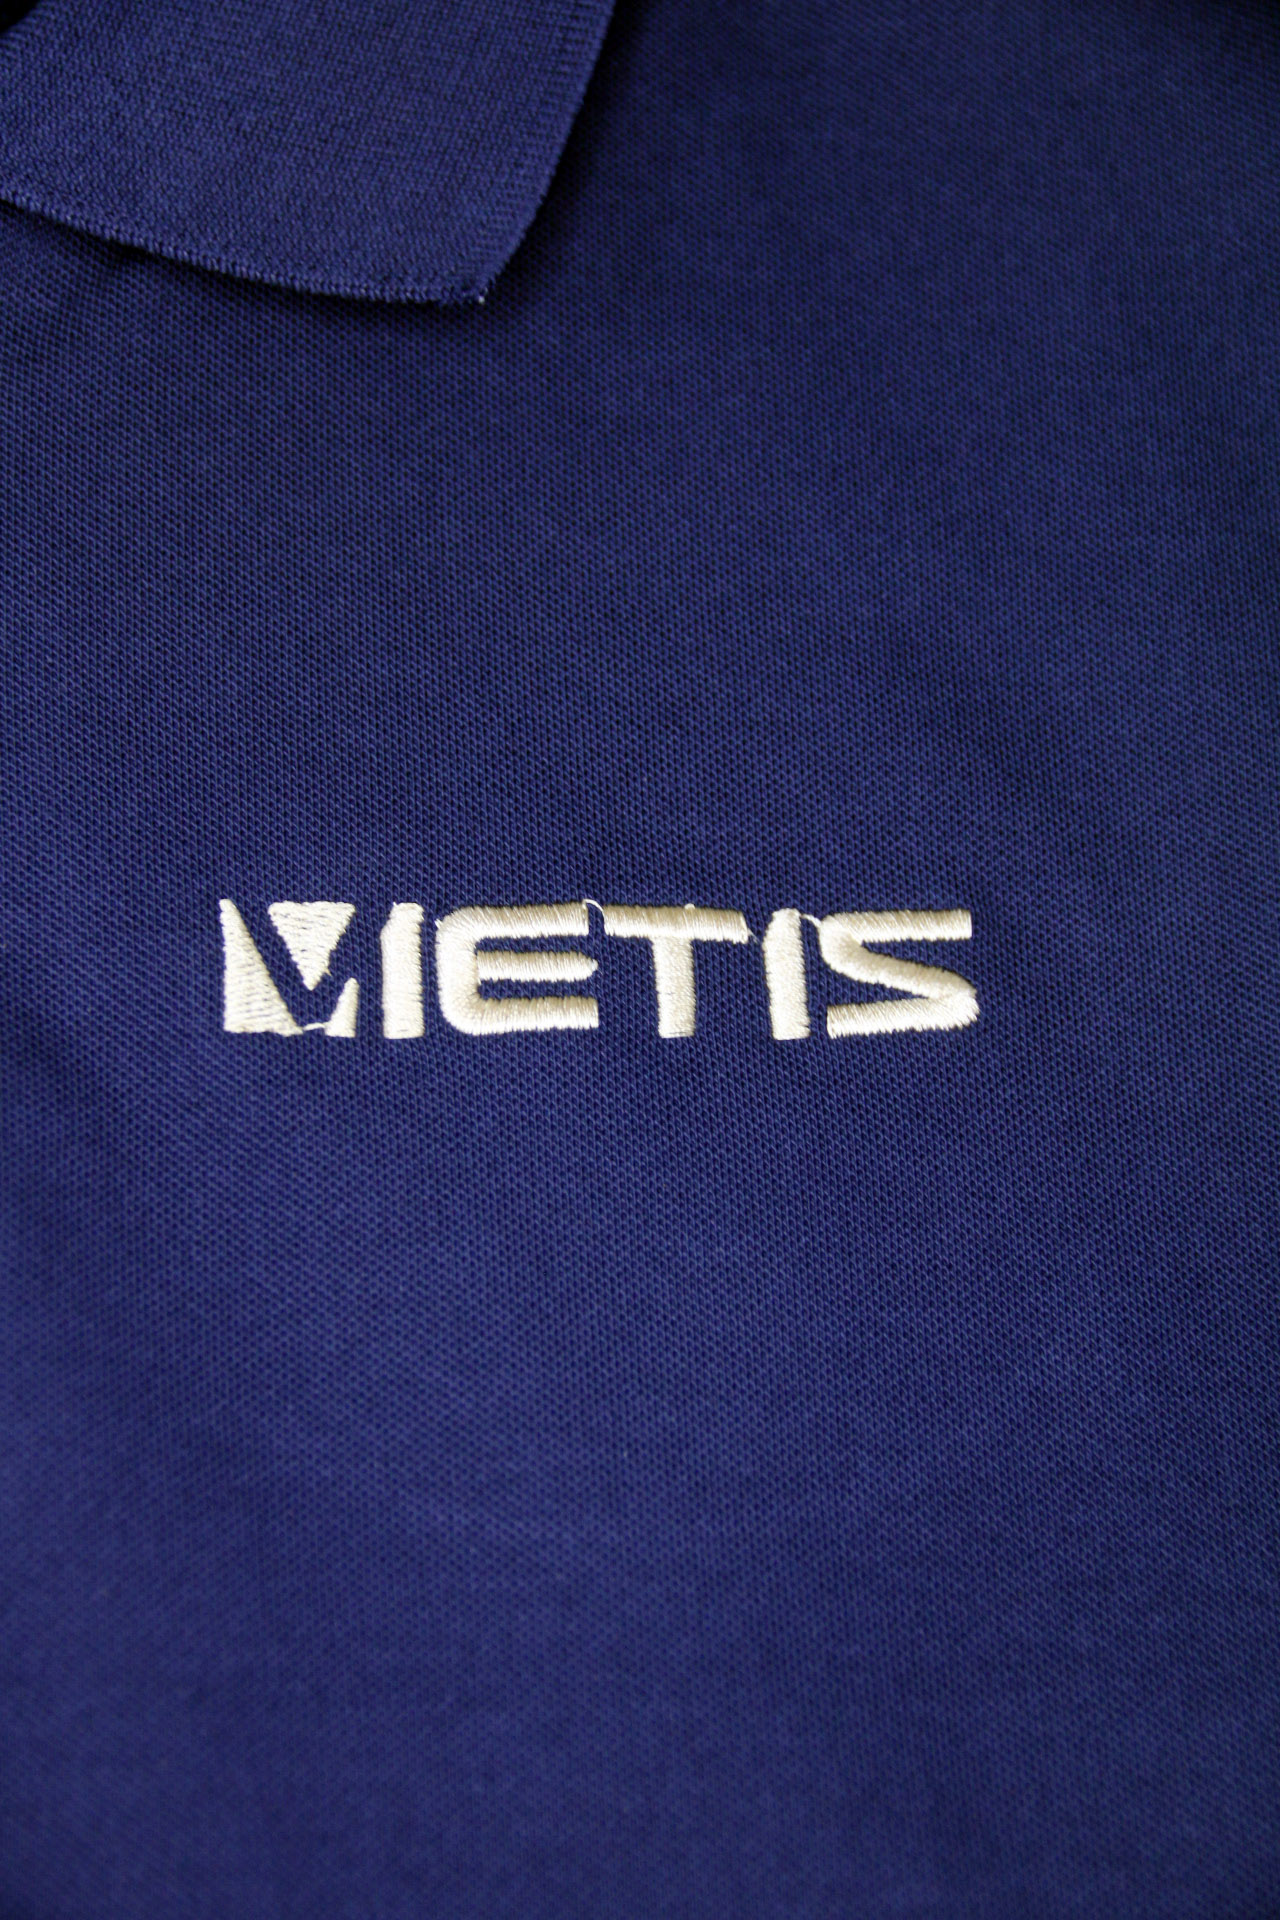 Mẫu thêu logo áo đồng phục công ty Vietis